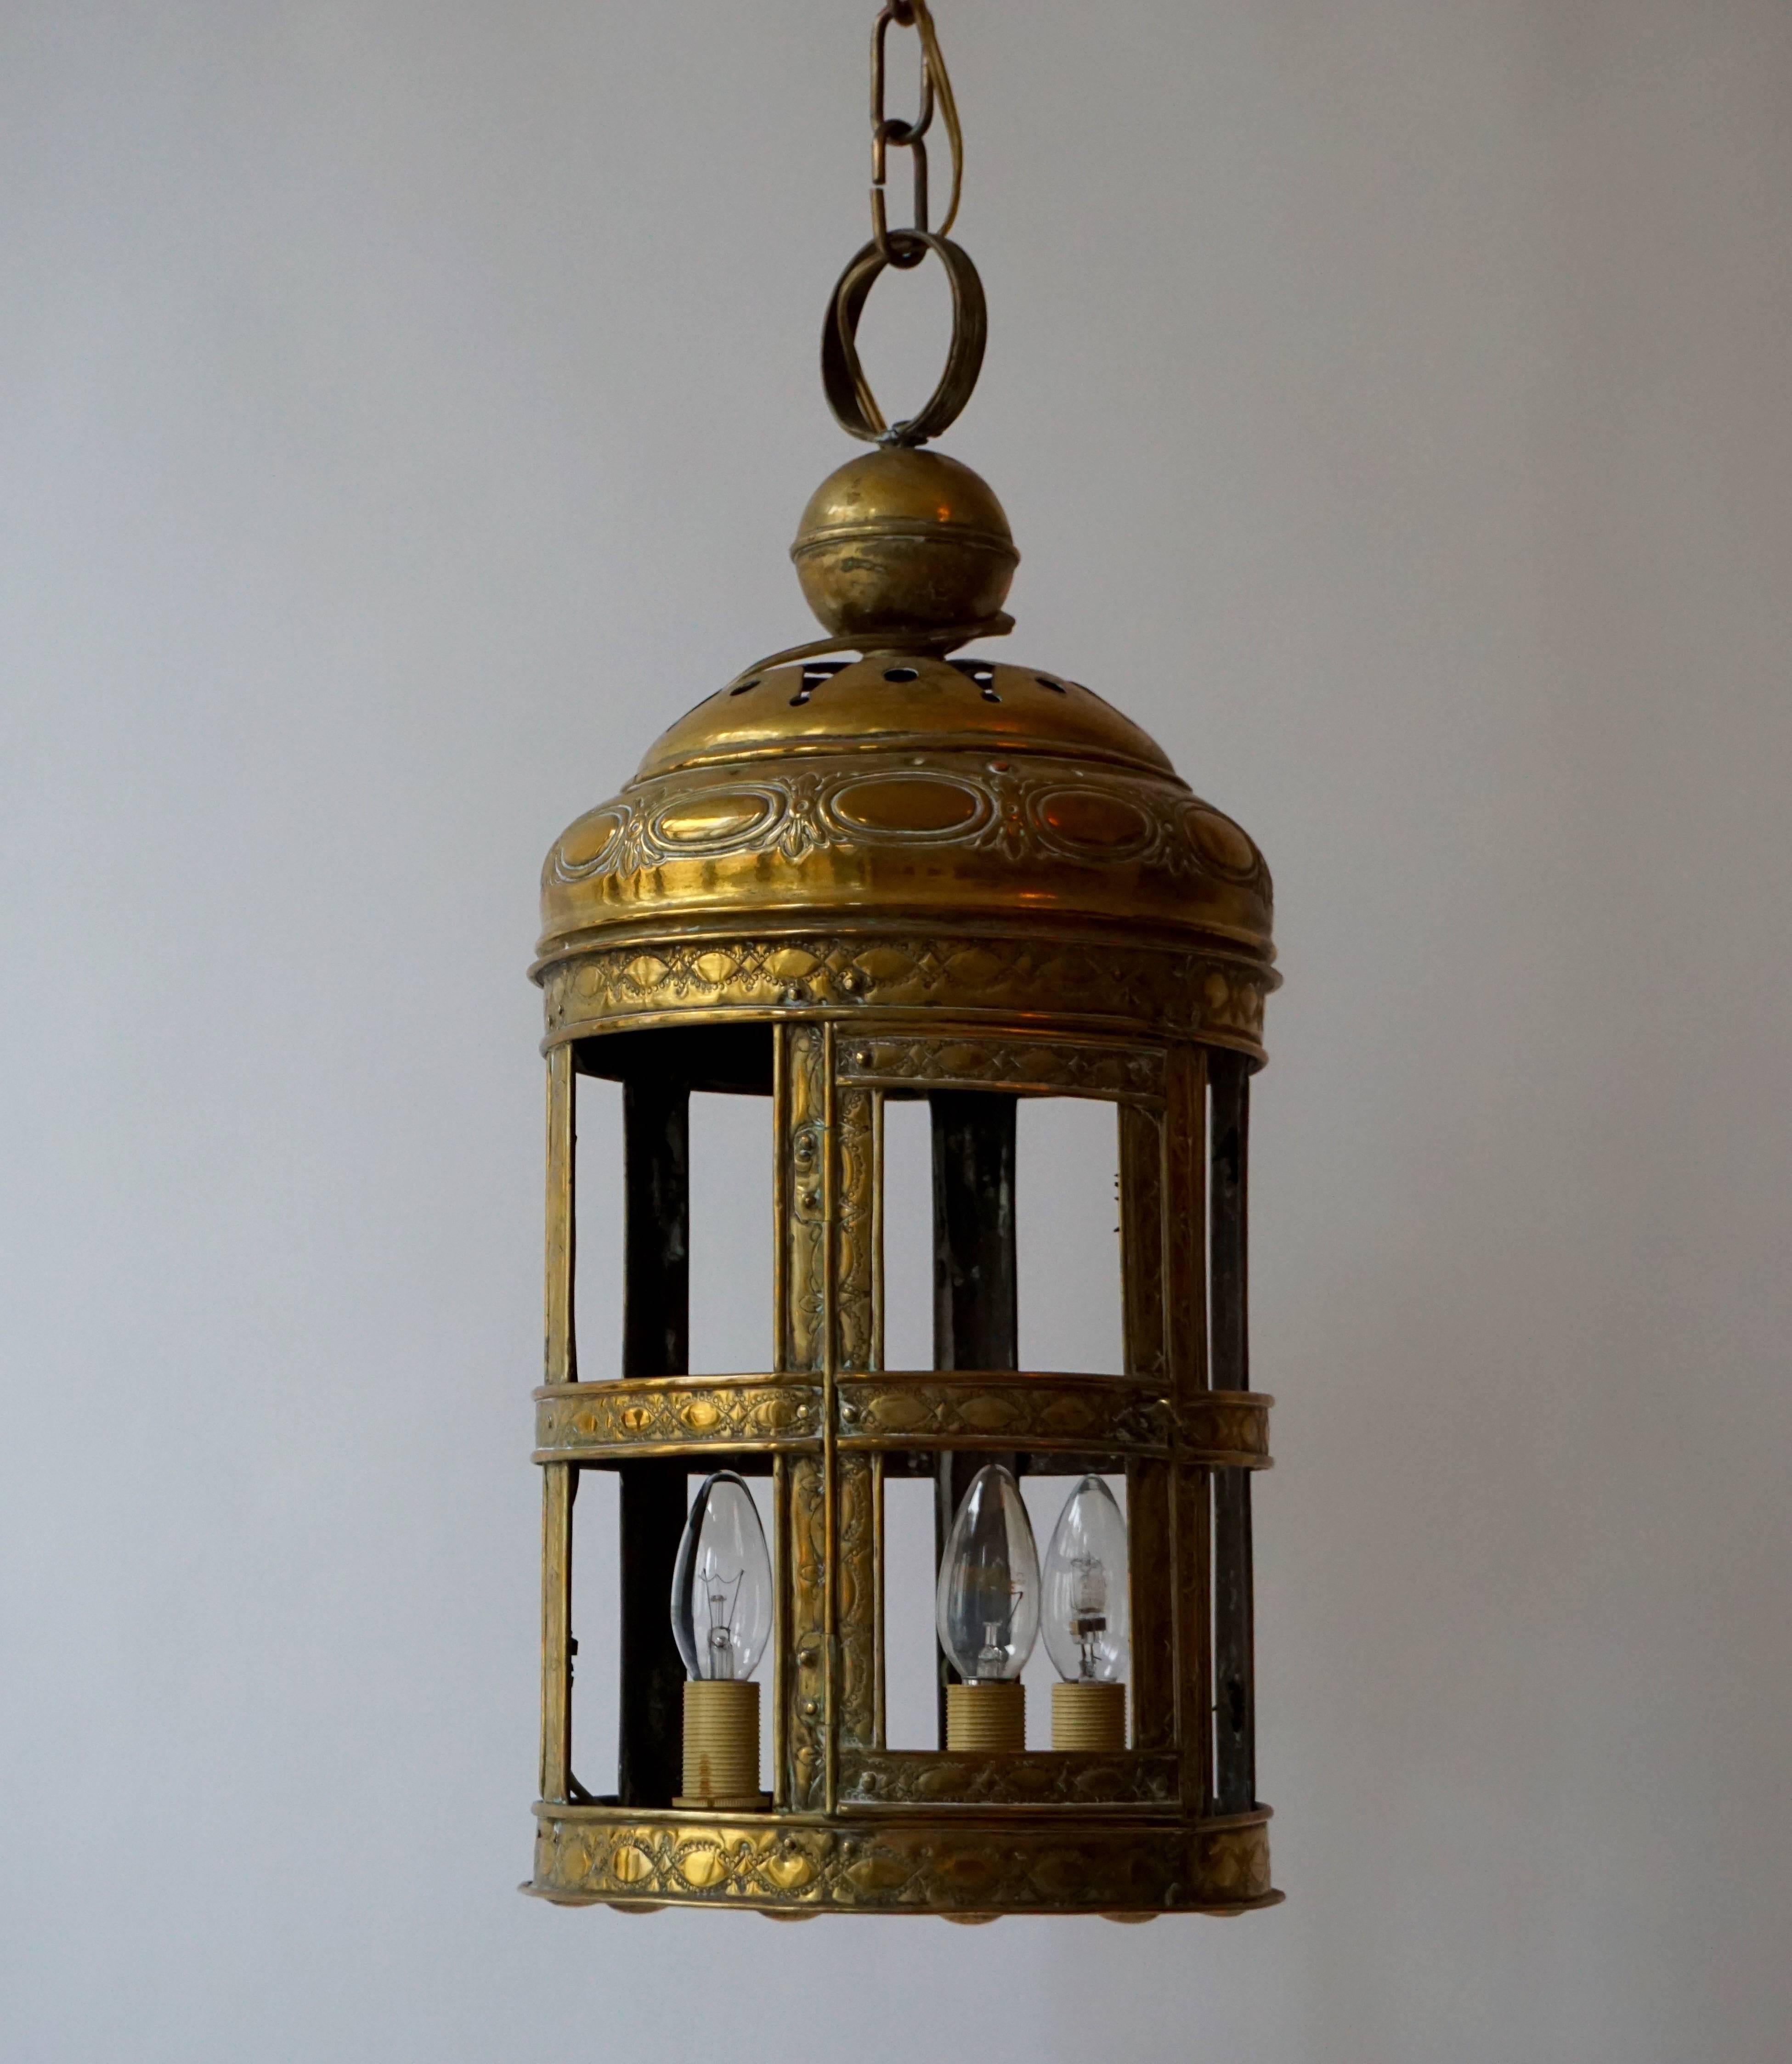 Une belle lanterne Arts & Crafts originale en laiton. Cette lanterne rare et étonnante est de proportions substantielles et présente des motifs décoratifs attrayants martelés dans le cuivre, une technique favorite de la période Arts & Crafts.
La